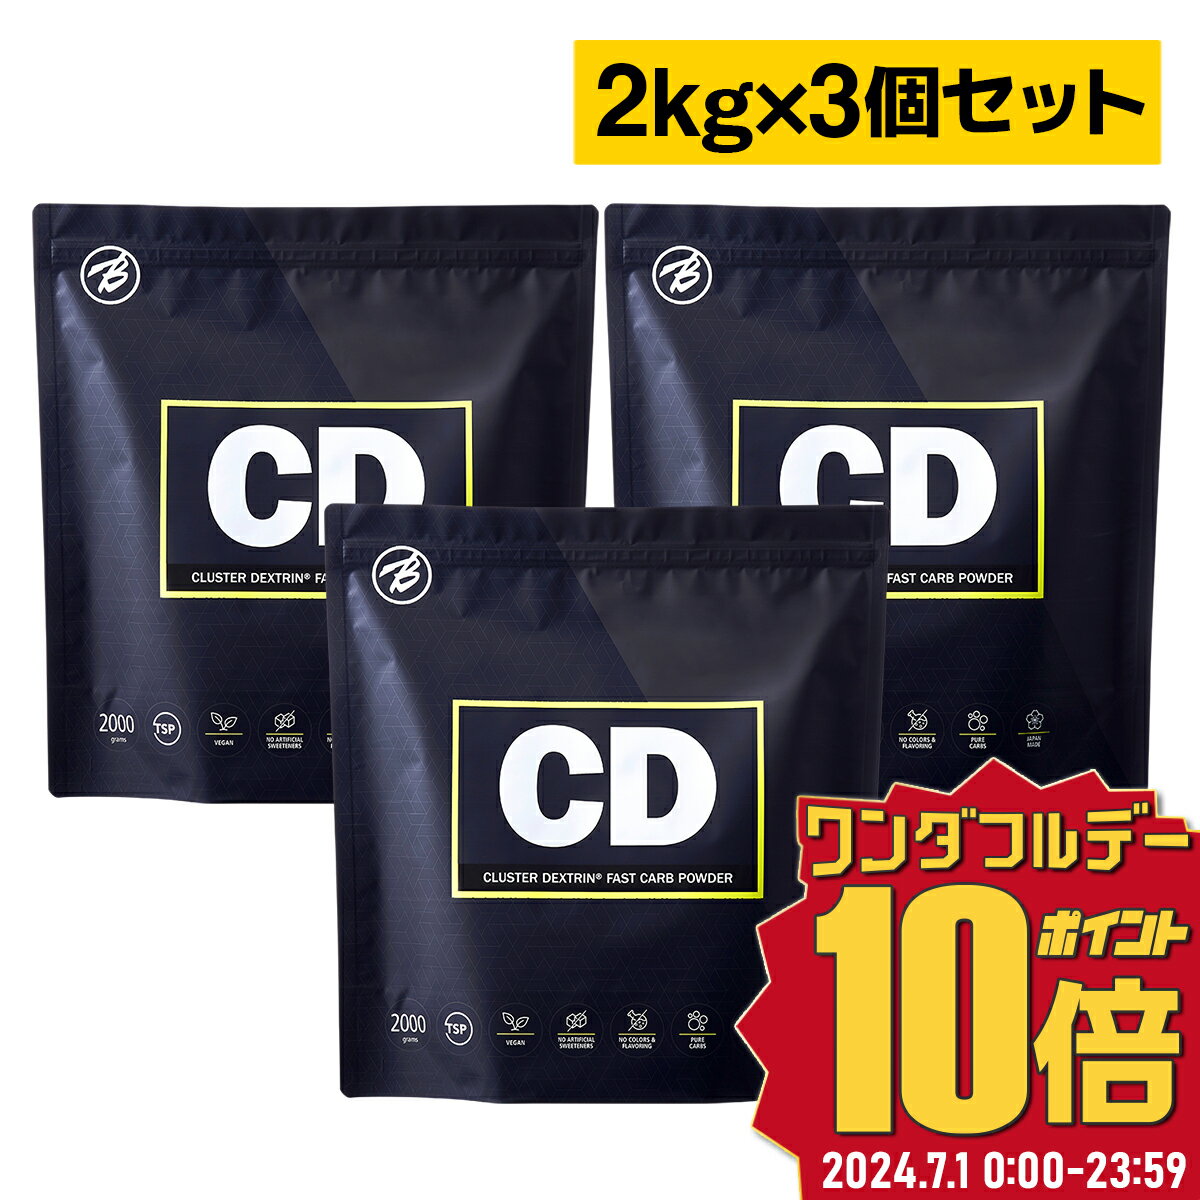 【バルクスポーツ】CD クラスターデキストリン 国産 2kg お得な3個セット 約270食分 福袋 ギフト